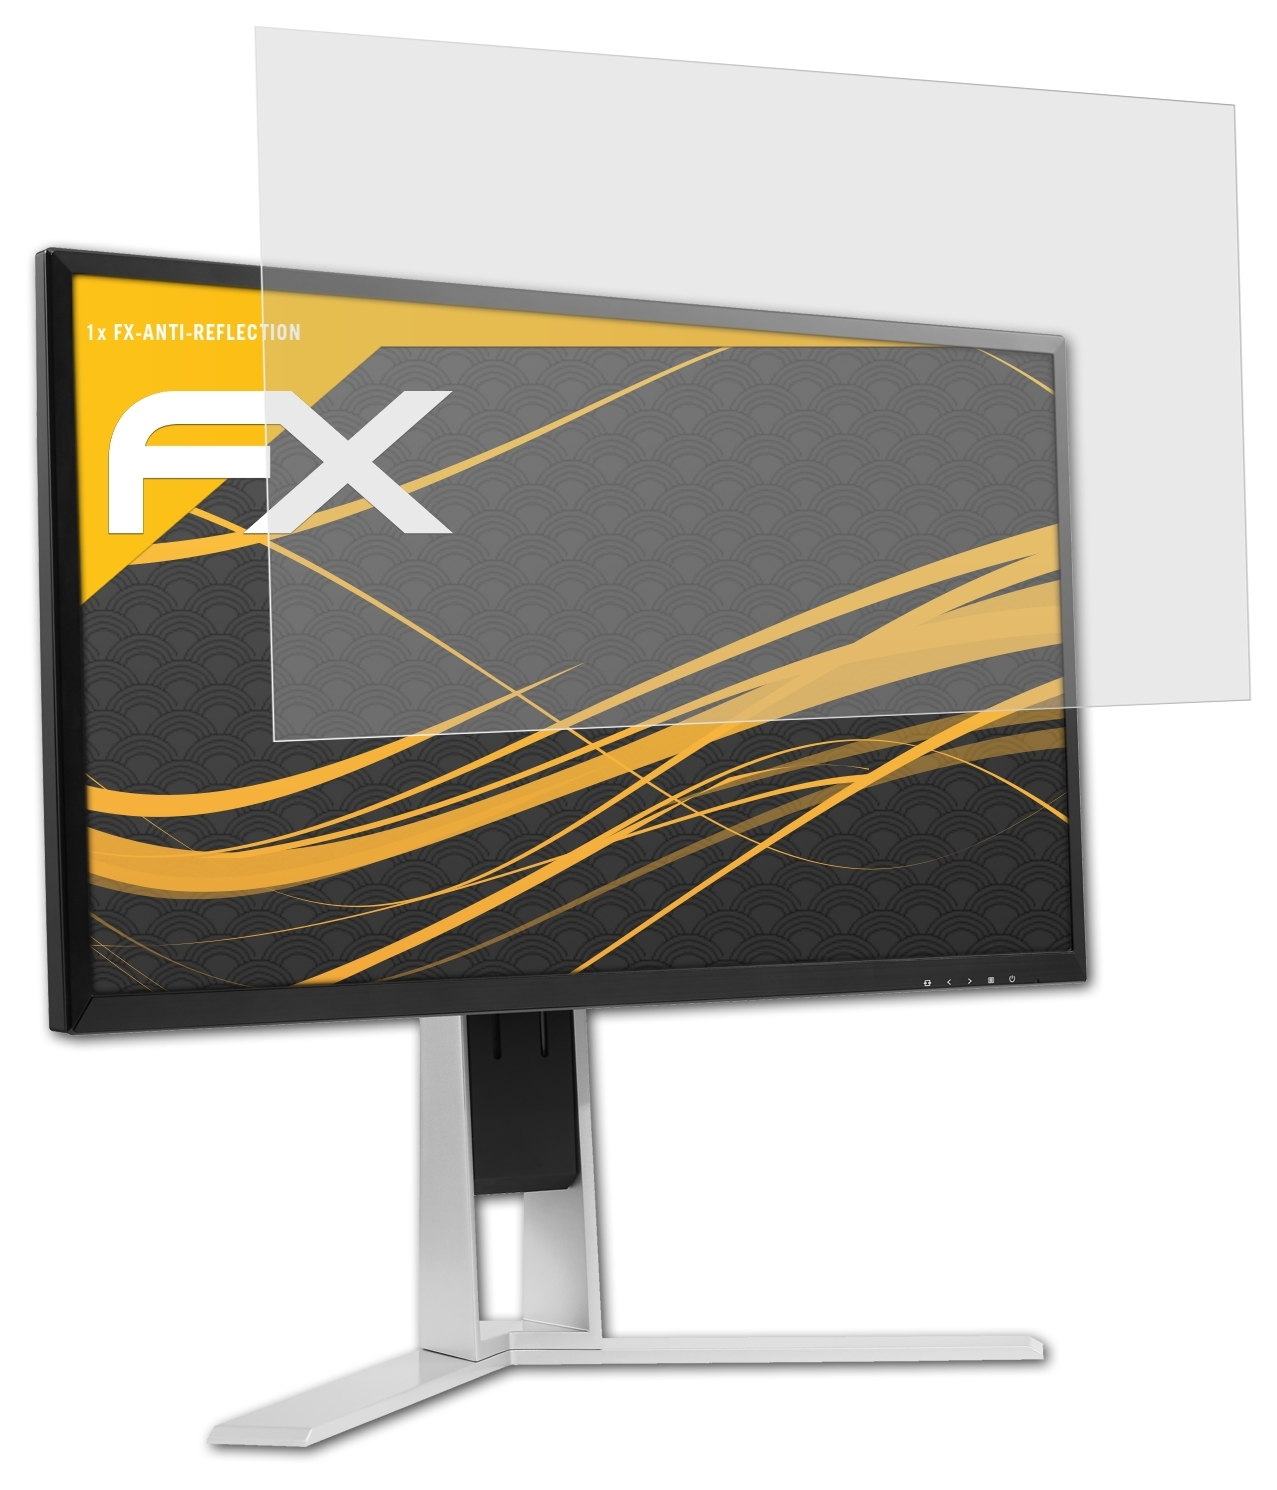 ATFOLIX FX-Antireflex Displayschutz(für AOC AG251FG)